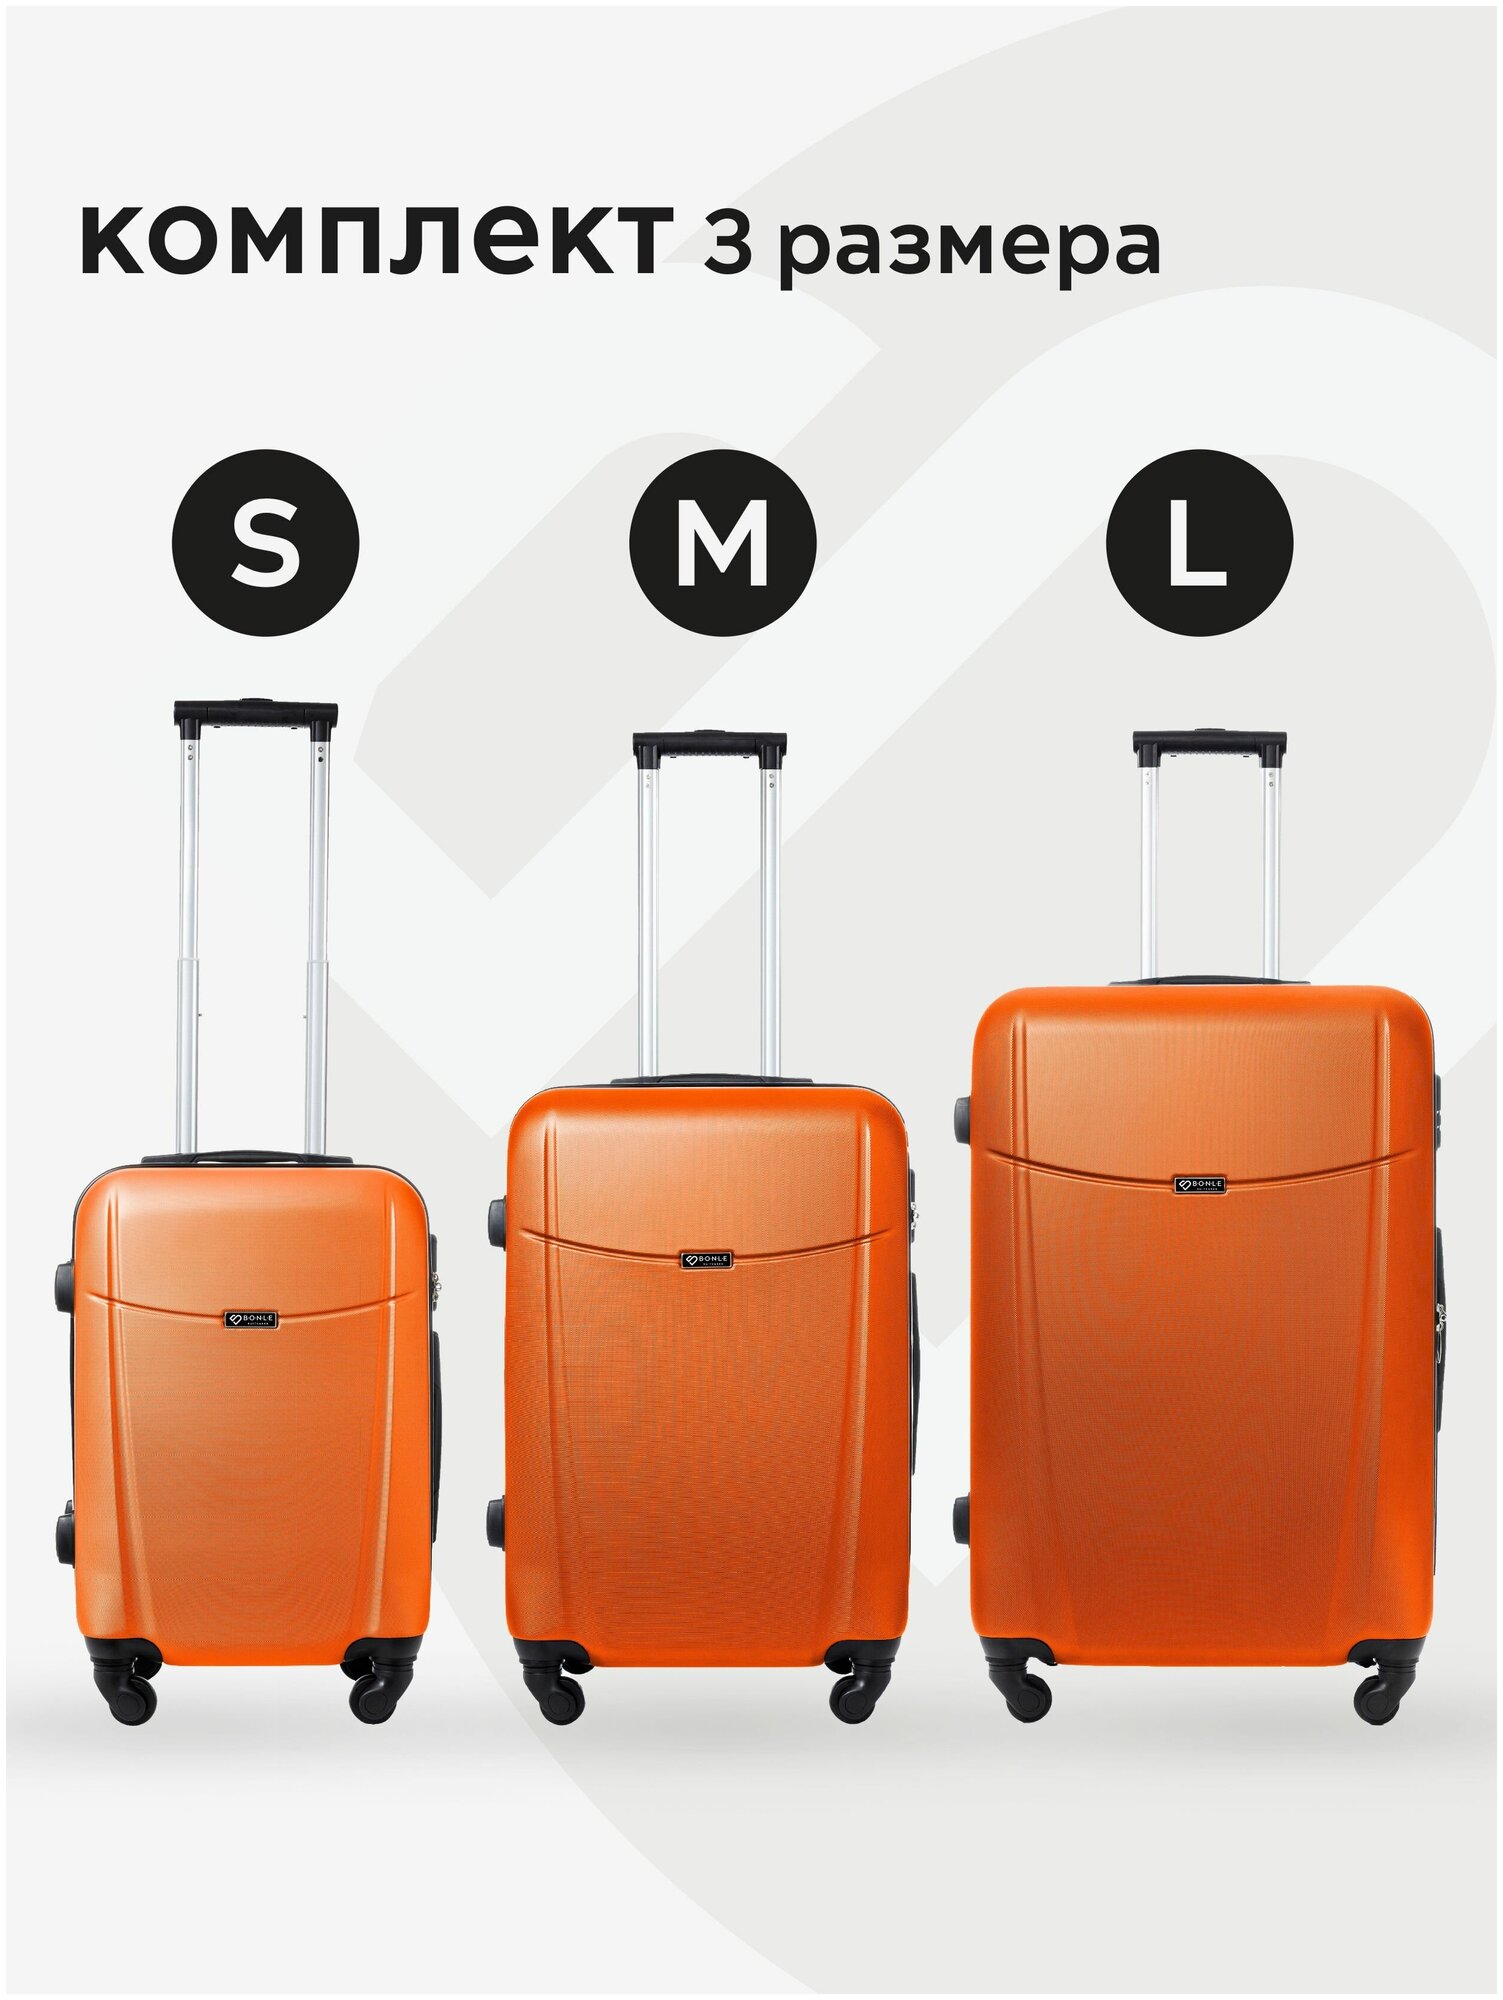 Комплект чемоданов 3шт, Тасмания, Оранжевый, размер L,M,S маленький, средний, большой, ручная кладь,дорожный, не тканевый